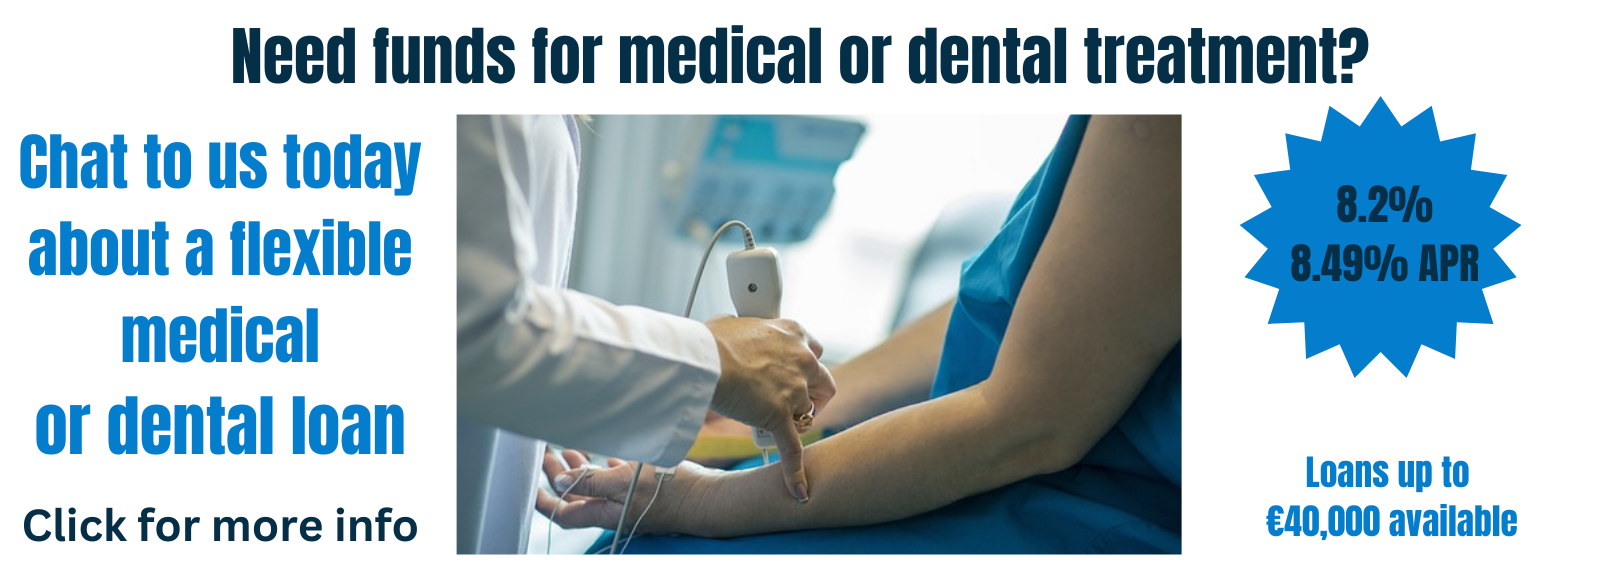 Blackrock Credit Union Medical & Dental loan image showing patient & doctor using medical equipment